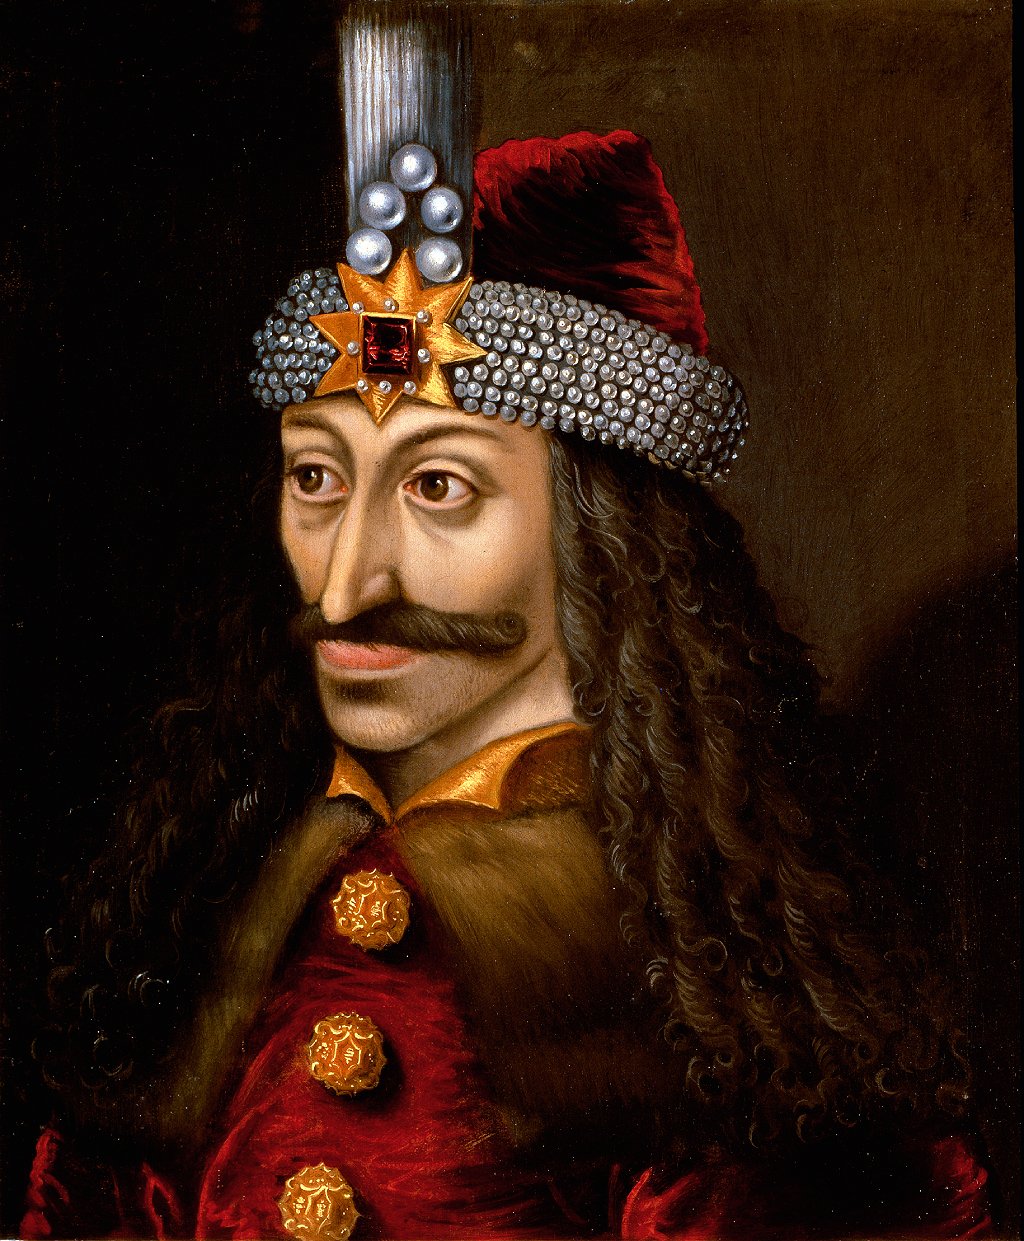 Retrato de Vlad III el Empalador, o Drácula (1431-1476), anónimo, siglo XVI.
GETTY IMAGES
